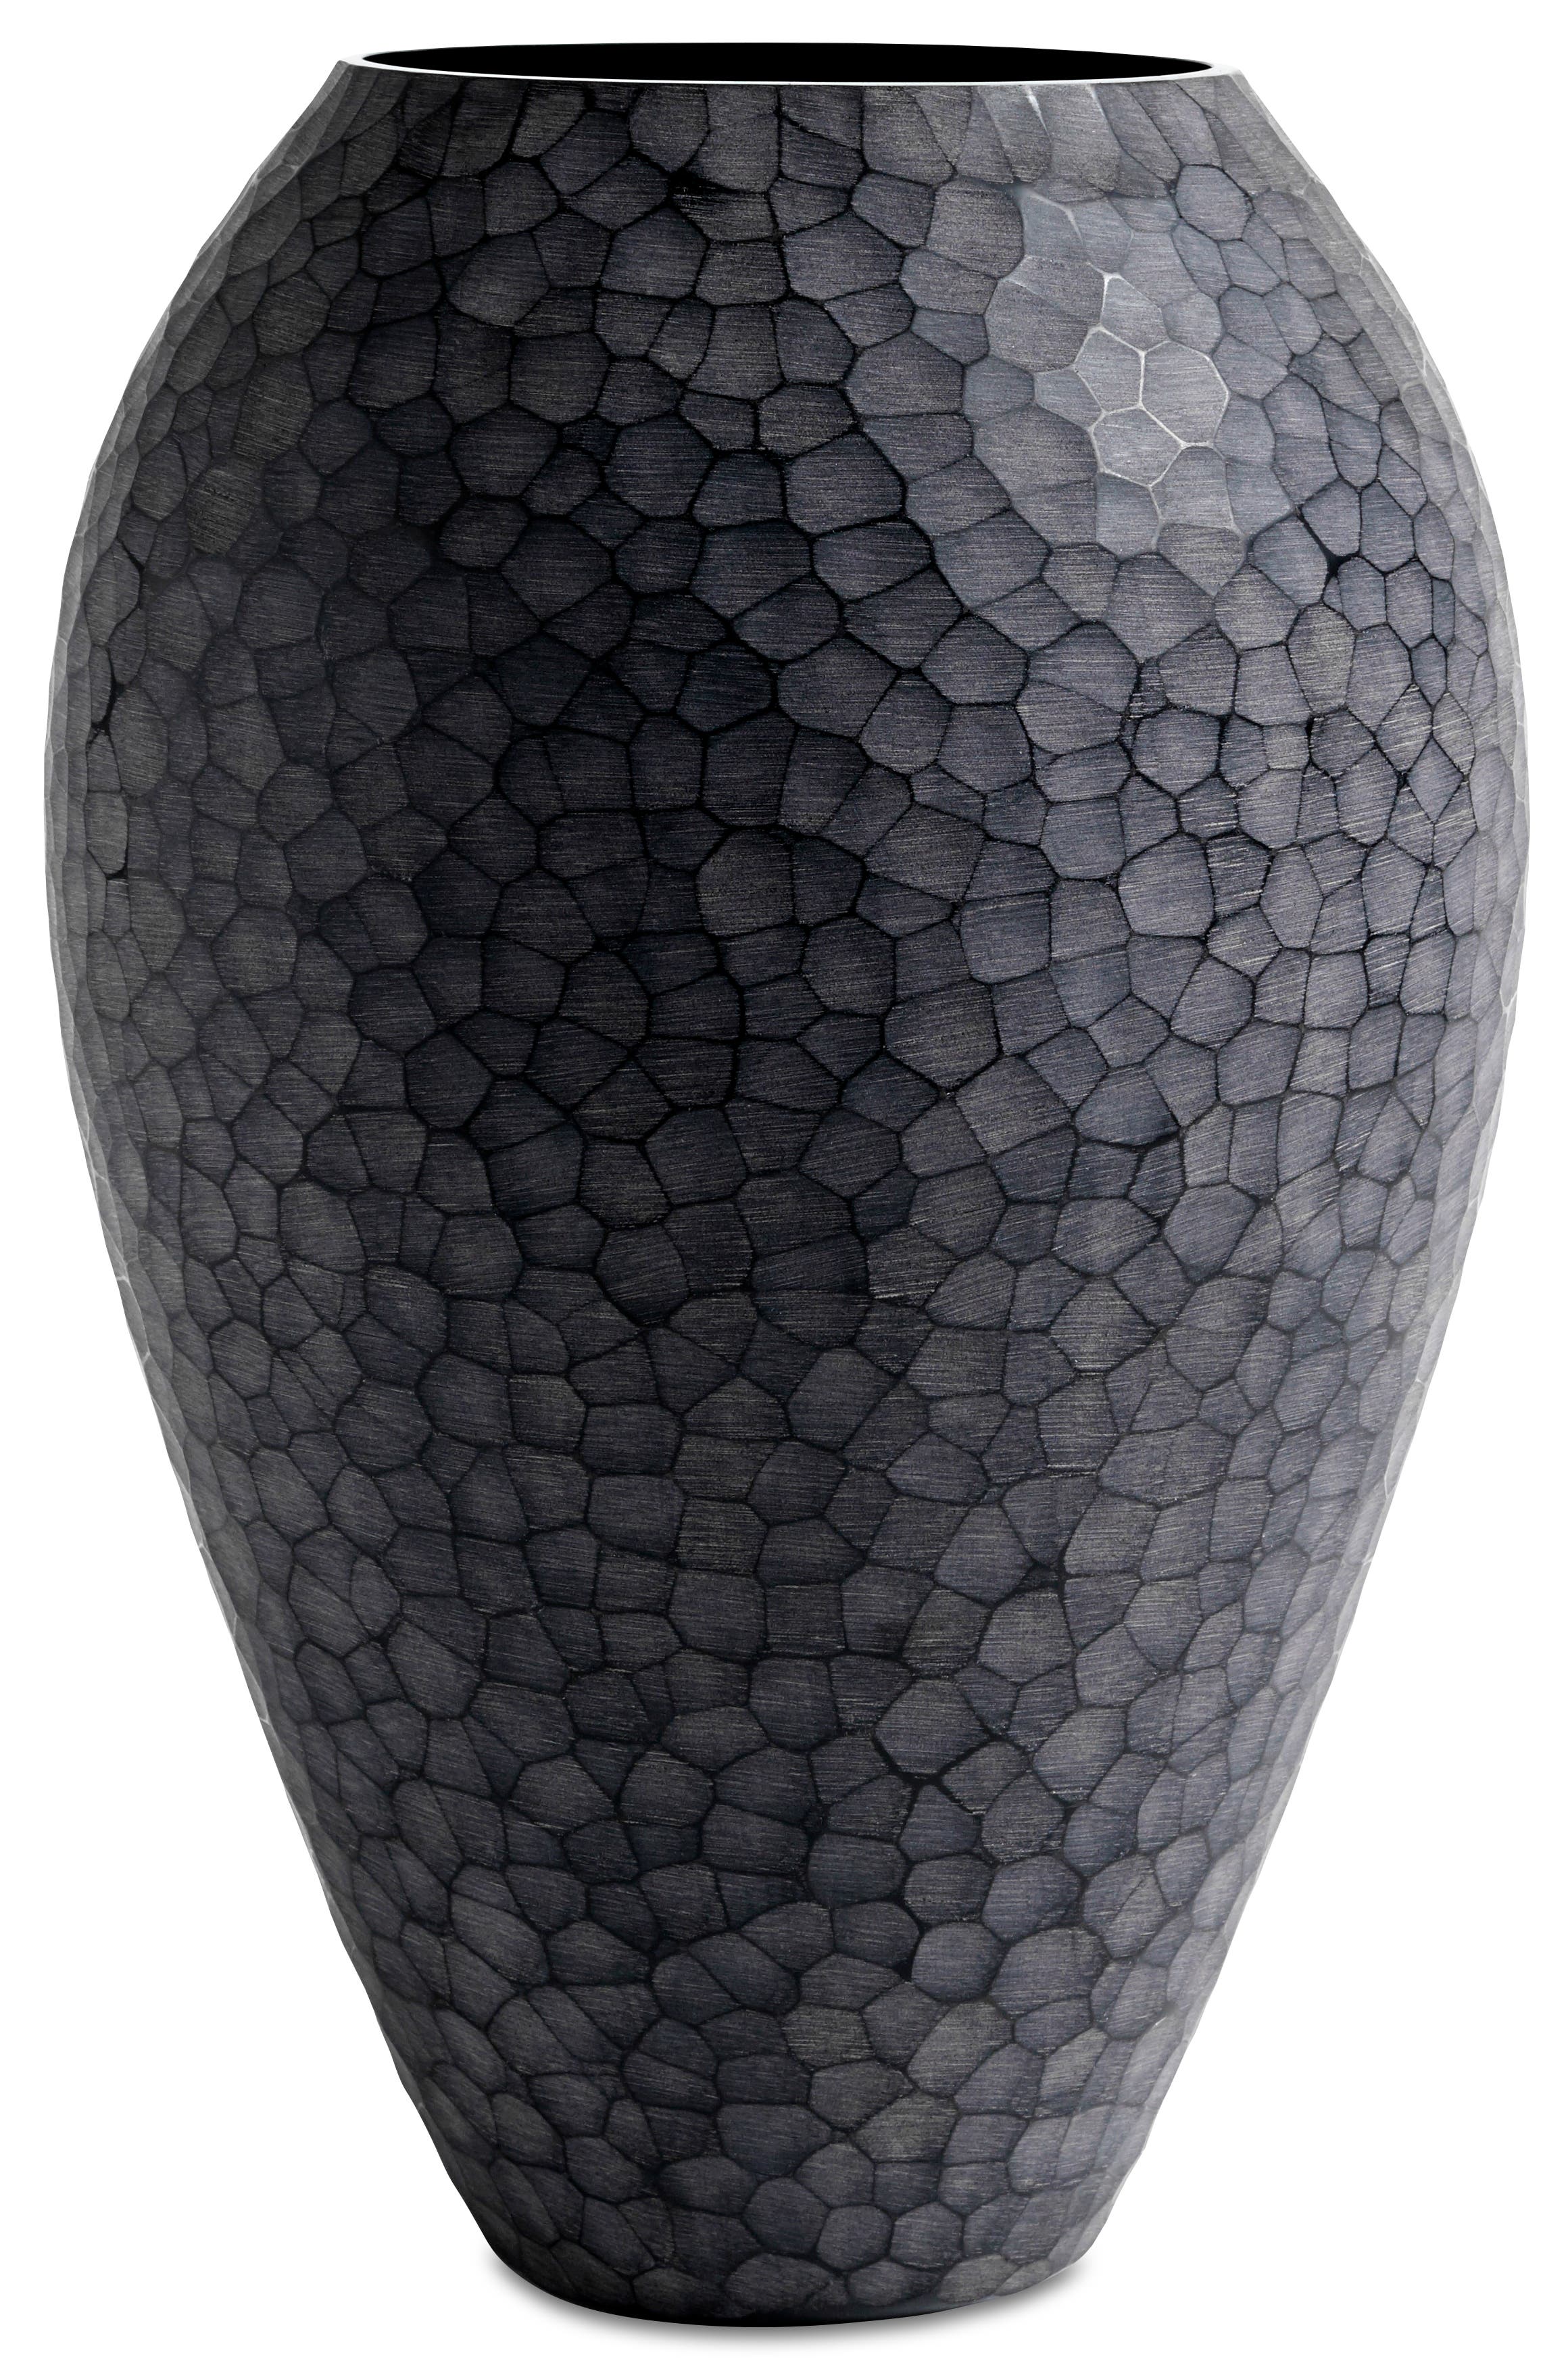 Rubble-vase